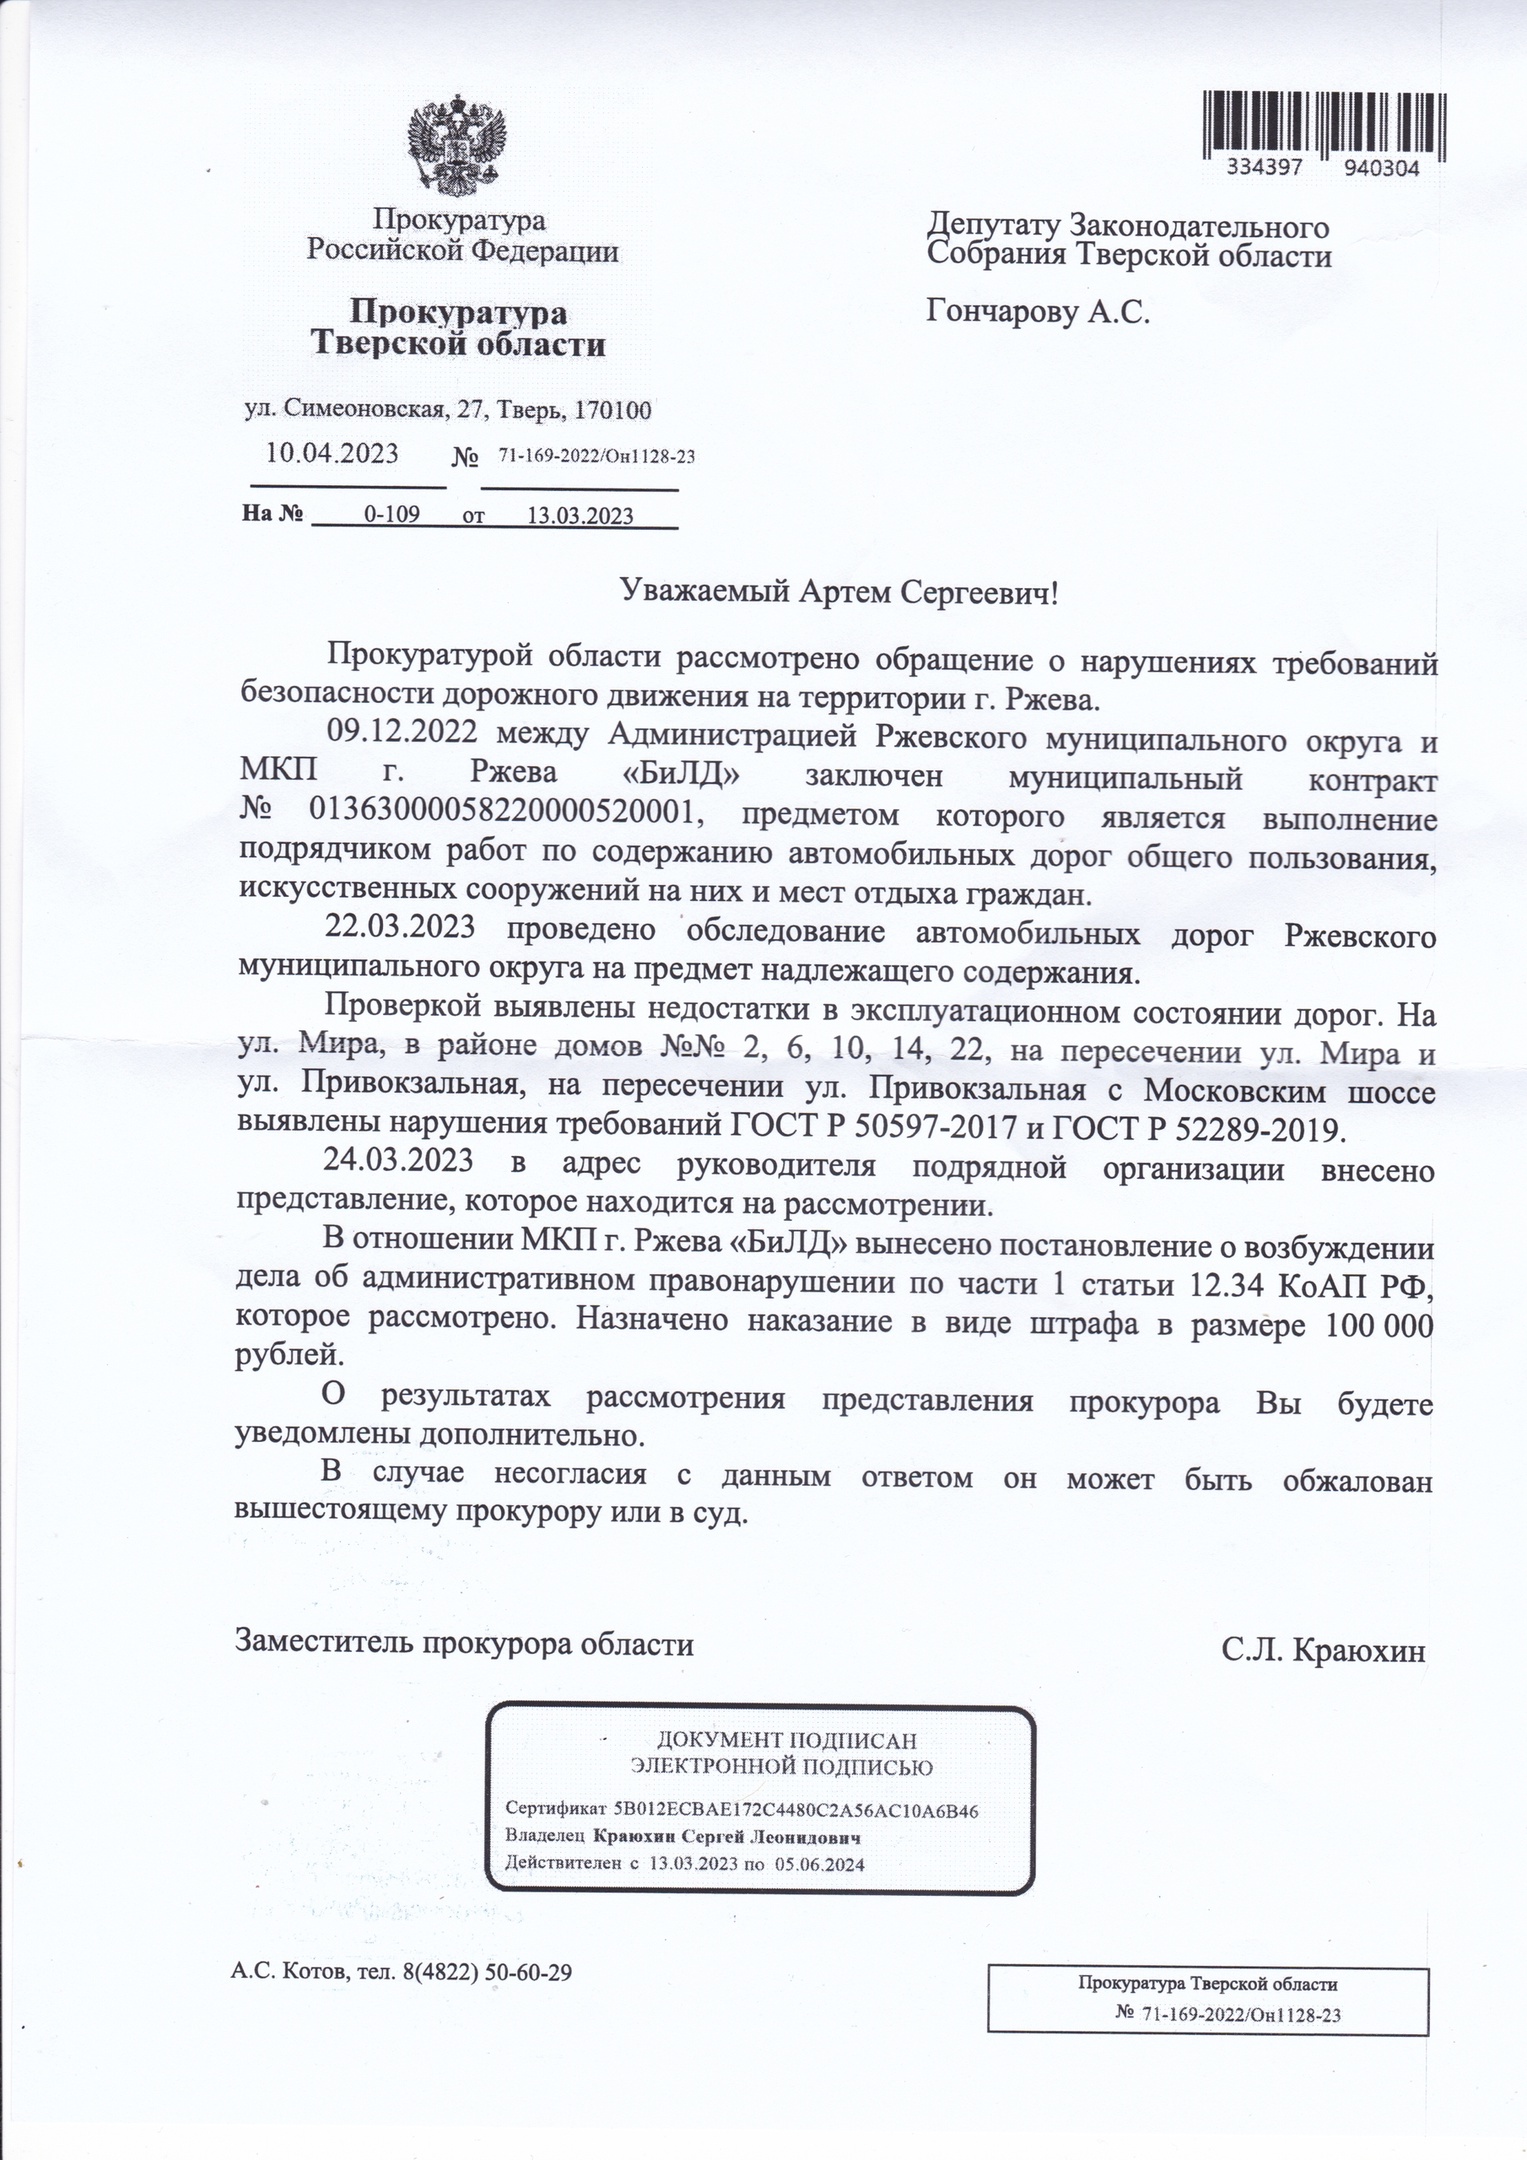 ответ Гончарову из прокуратуры